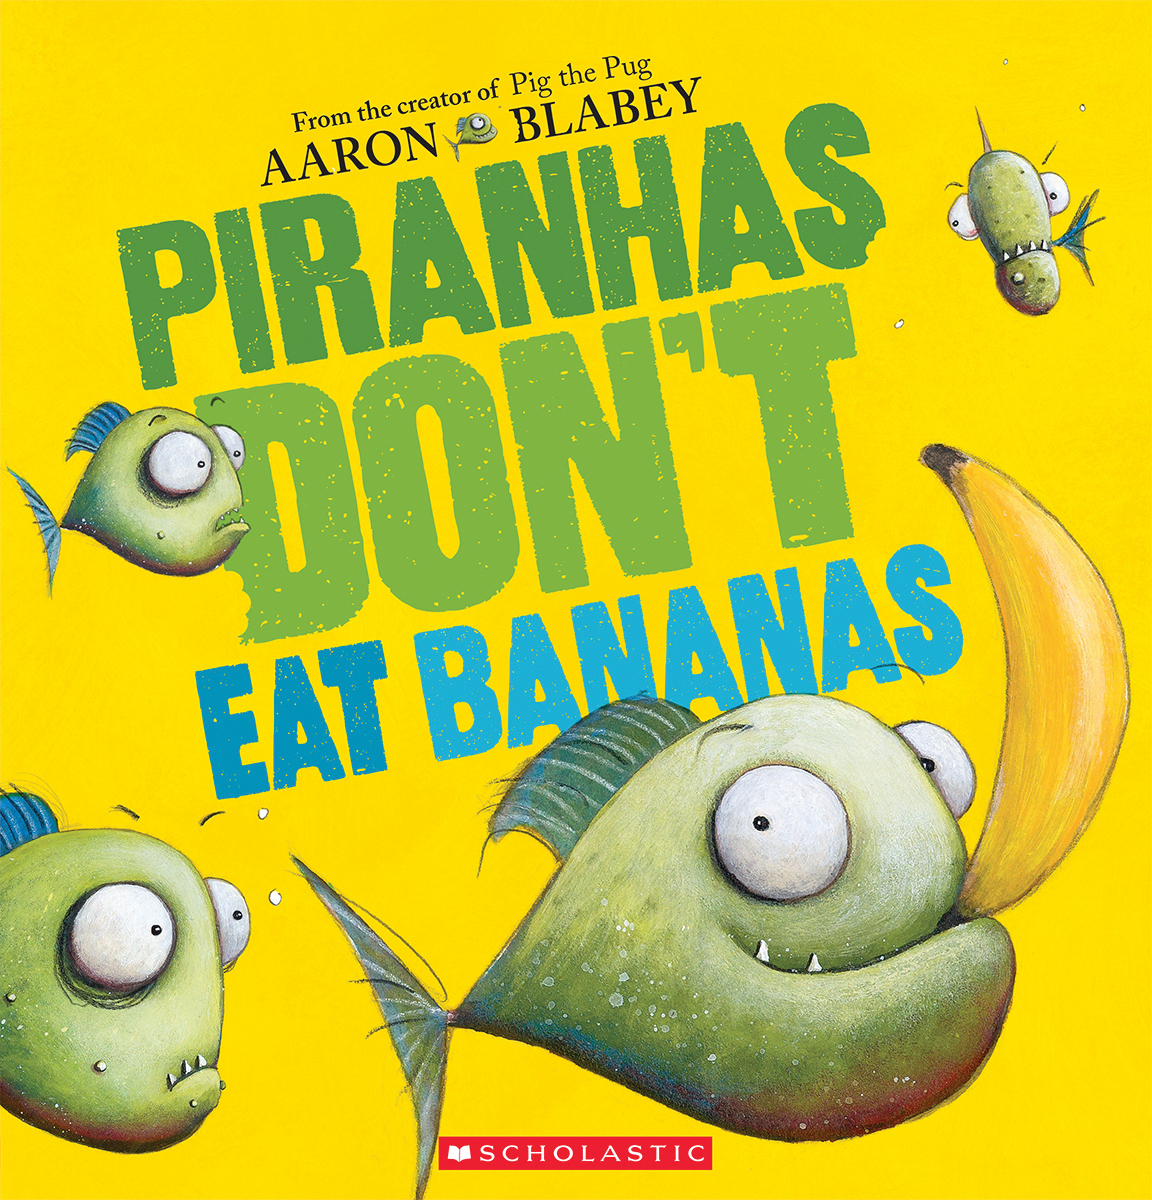  Piranhas Don't Eat Bananas 